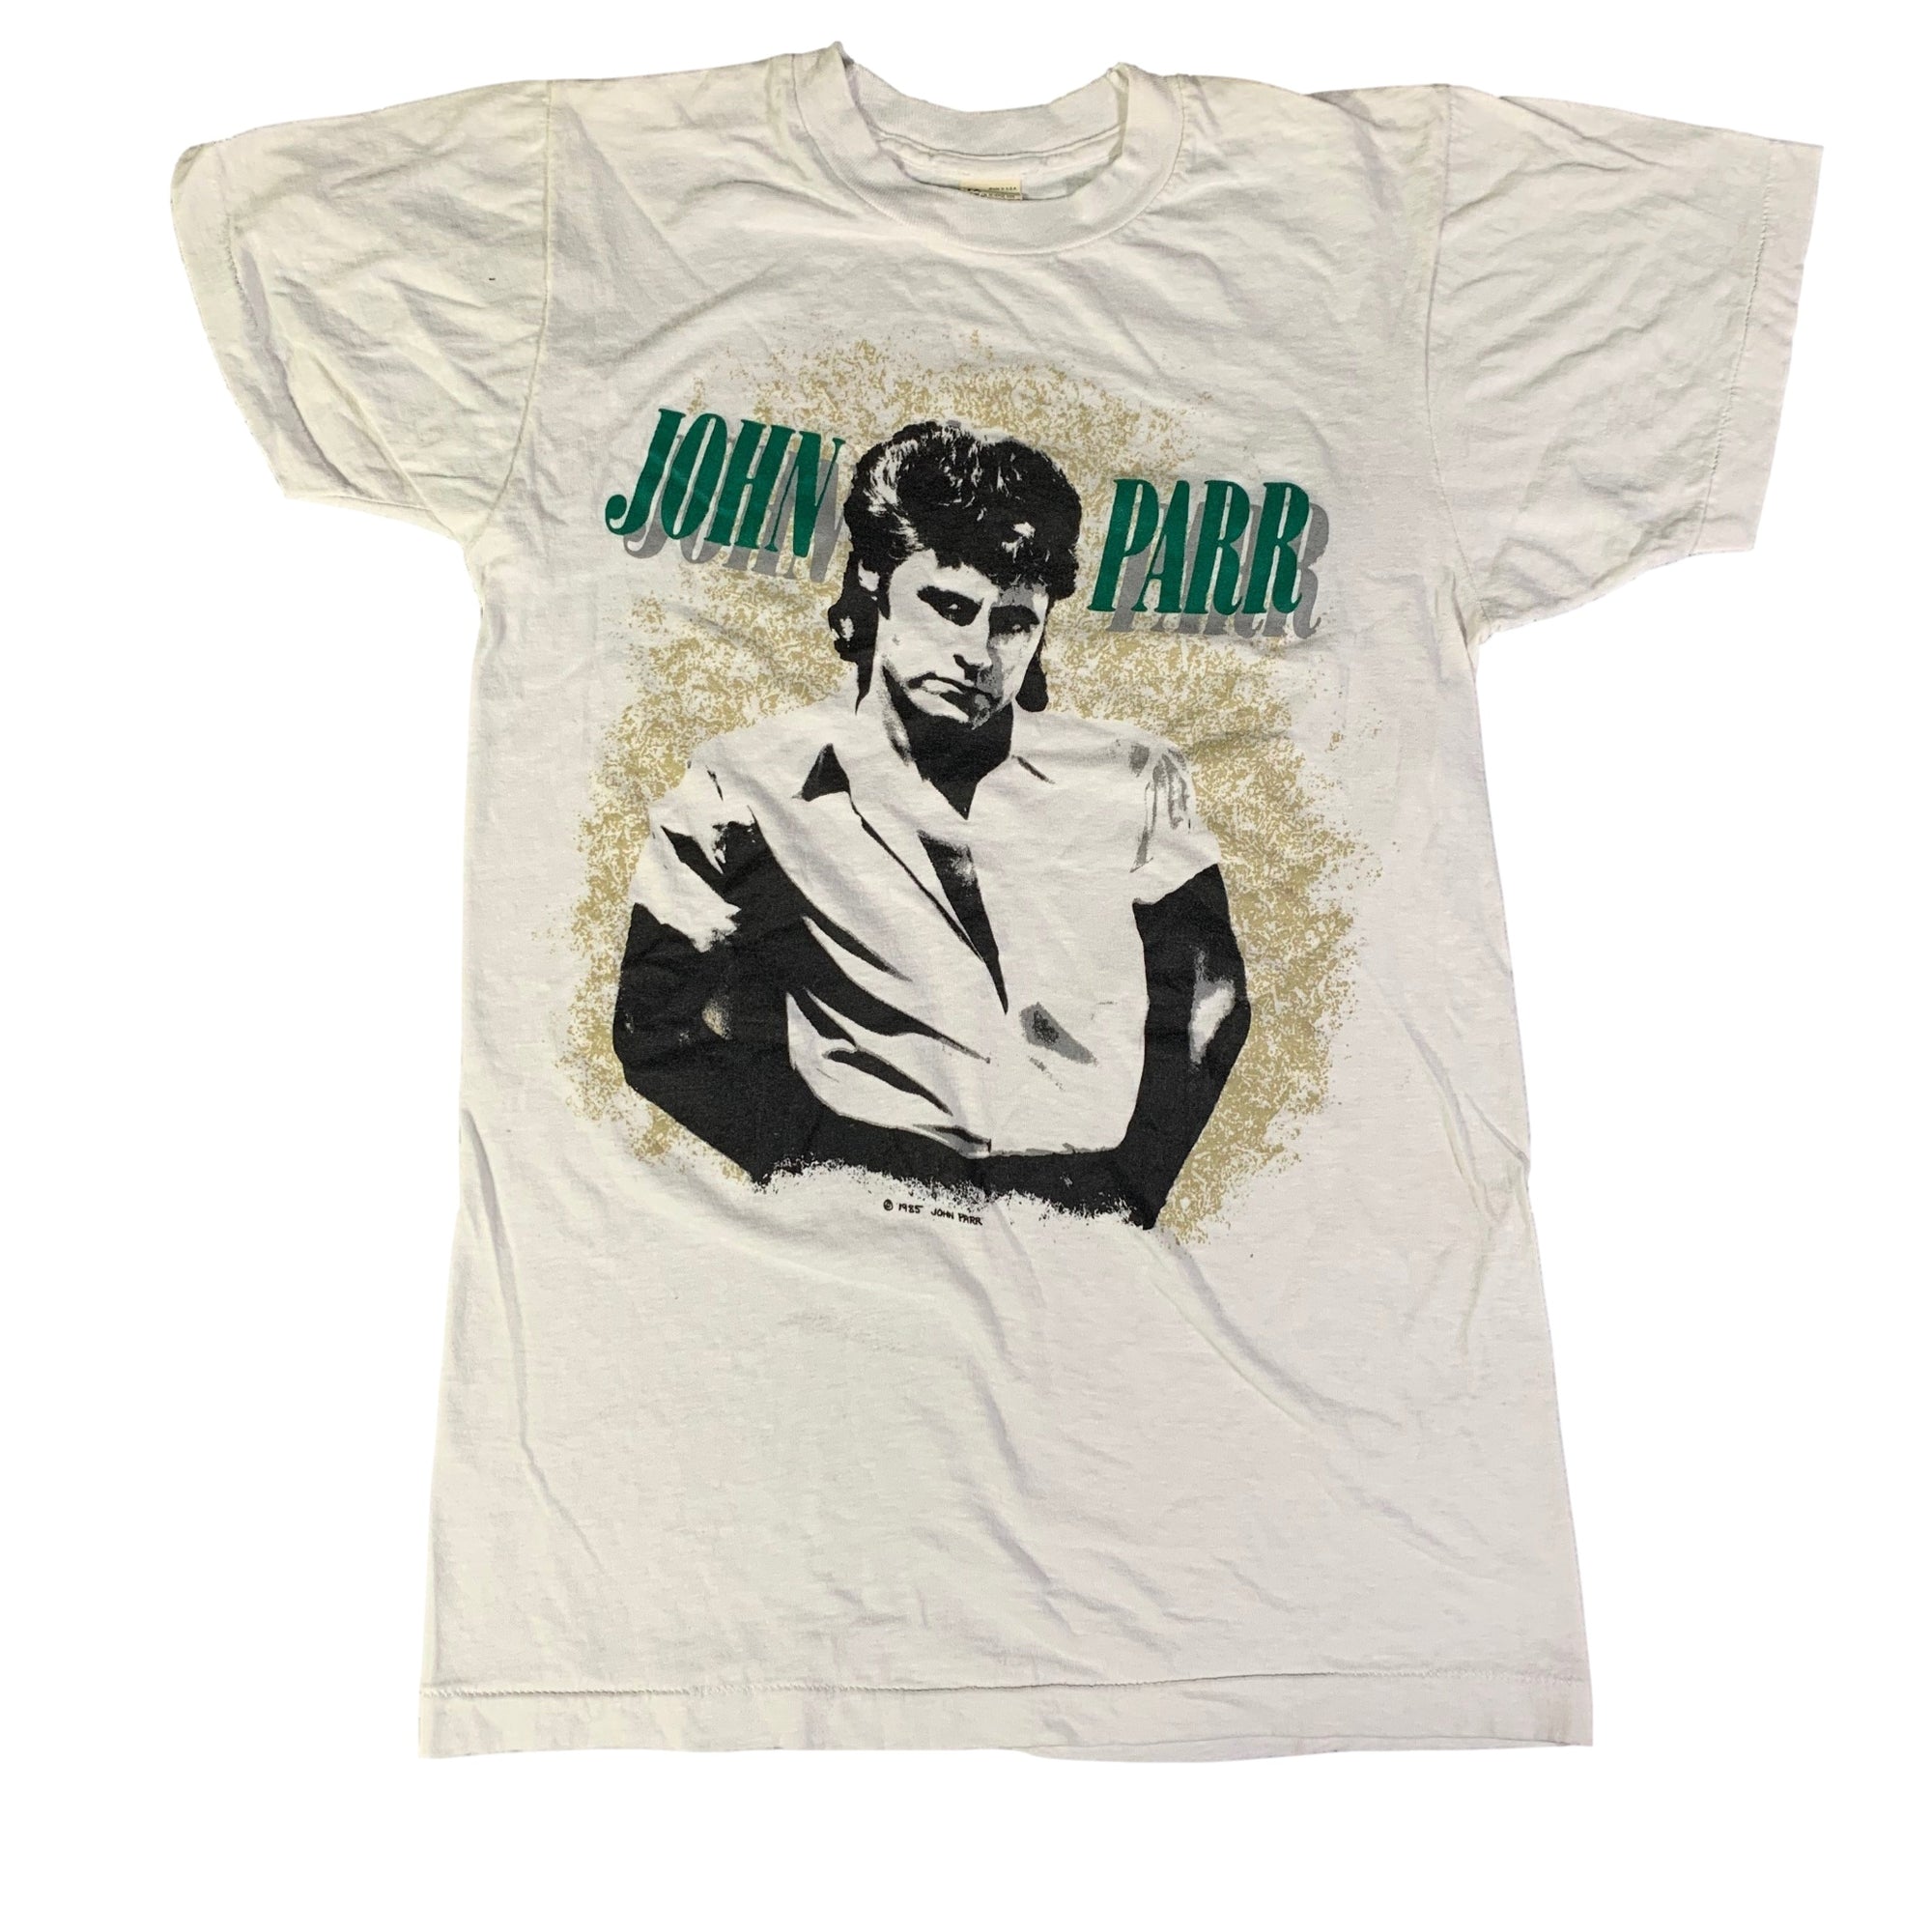 Vintage John Parr "85'" T-Shirt - jointcustodydc